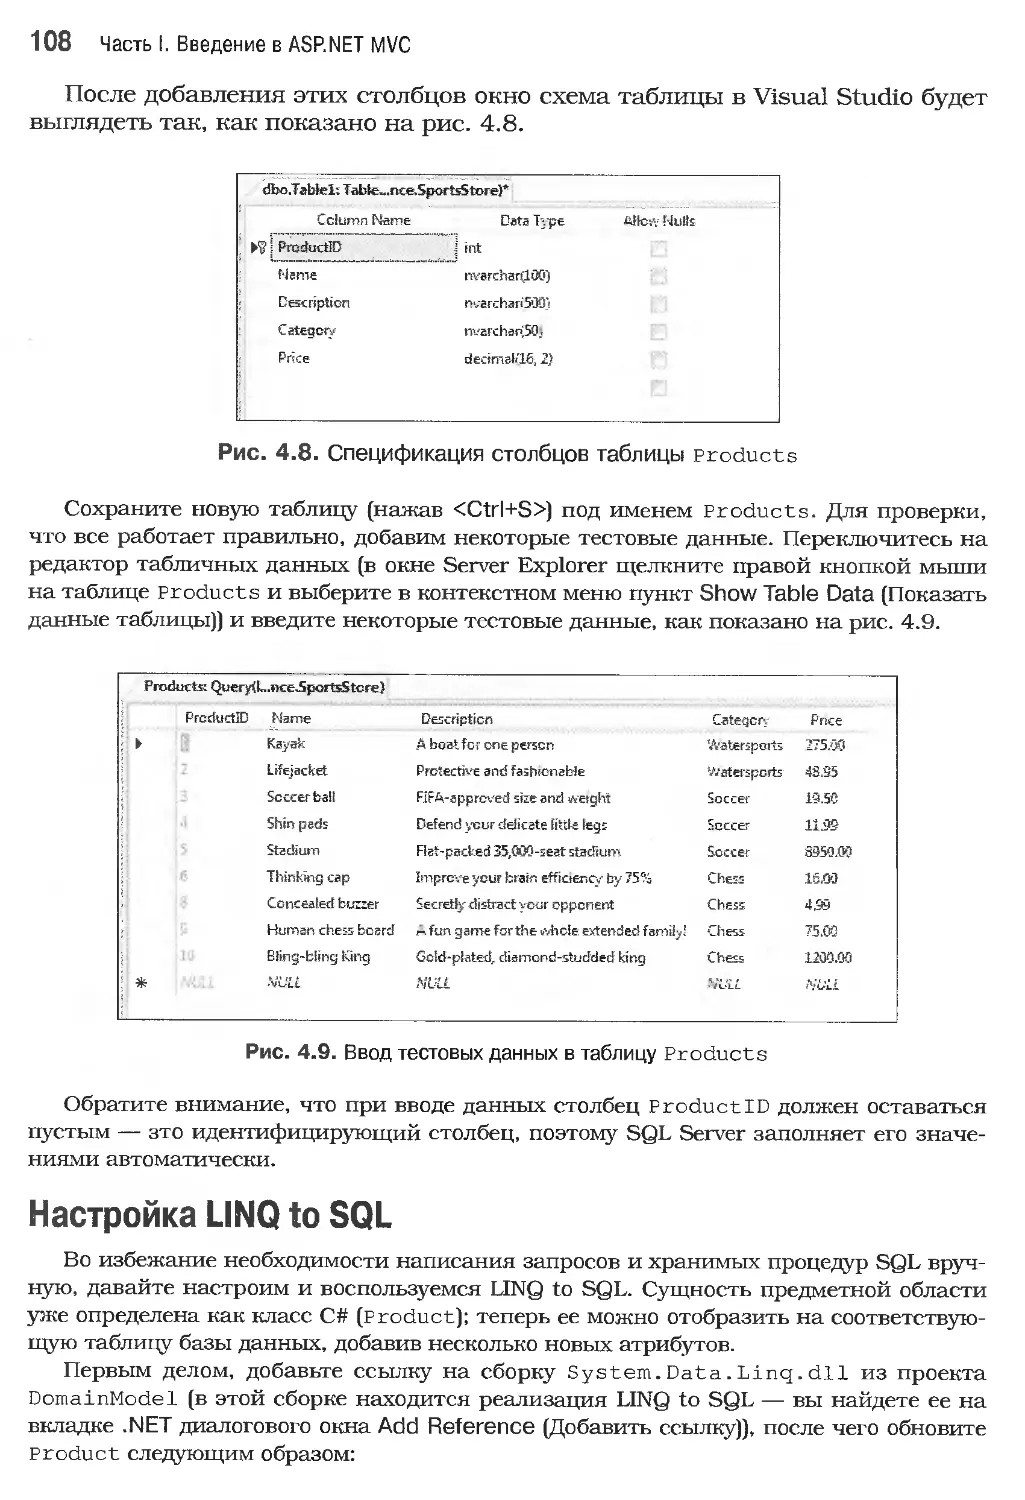 Настройка LINQ to SQL